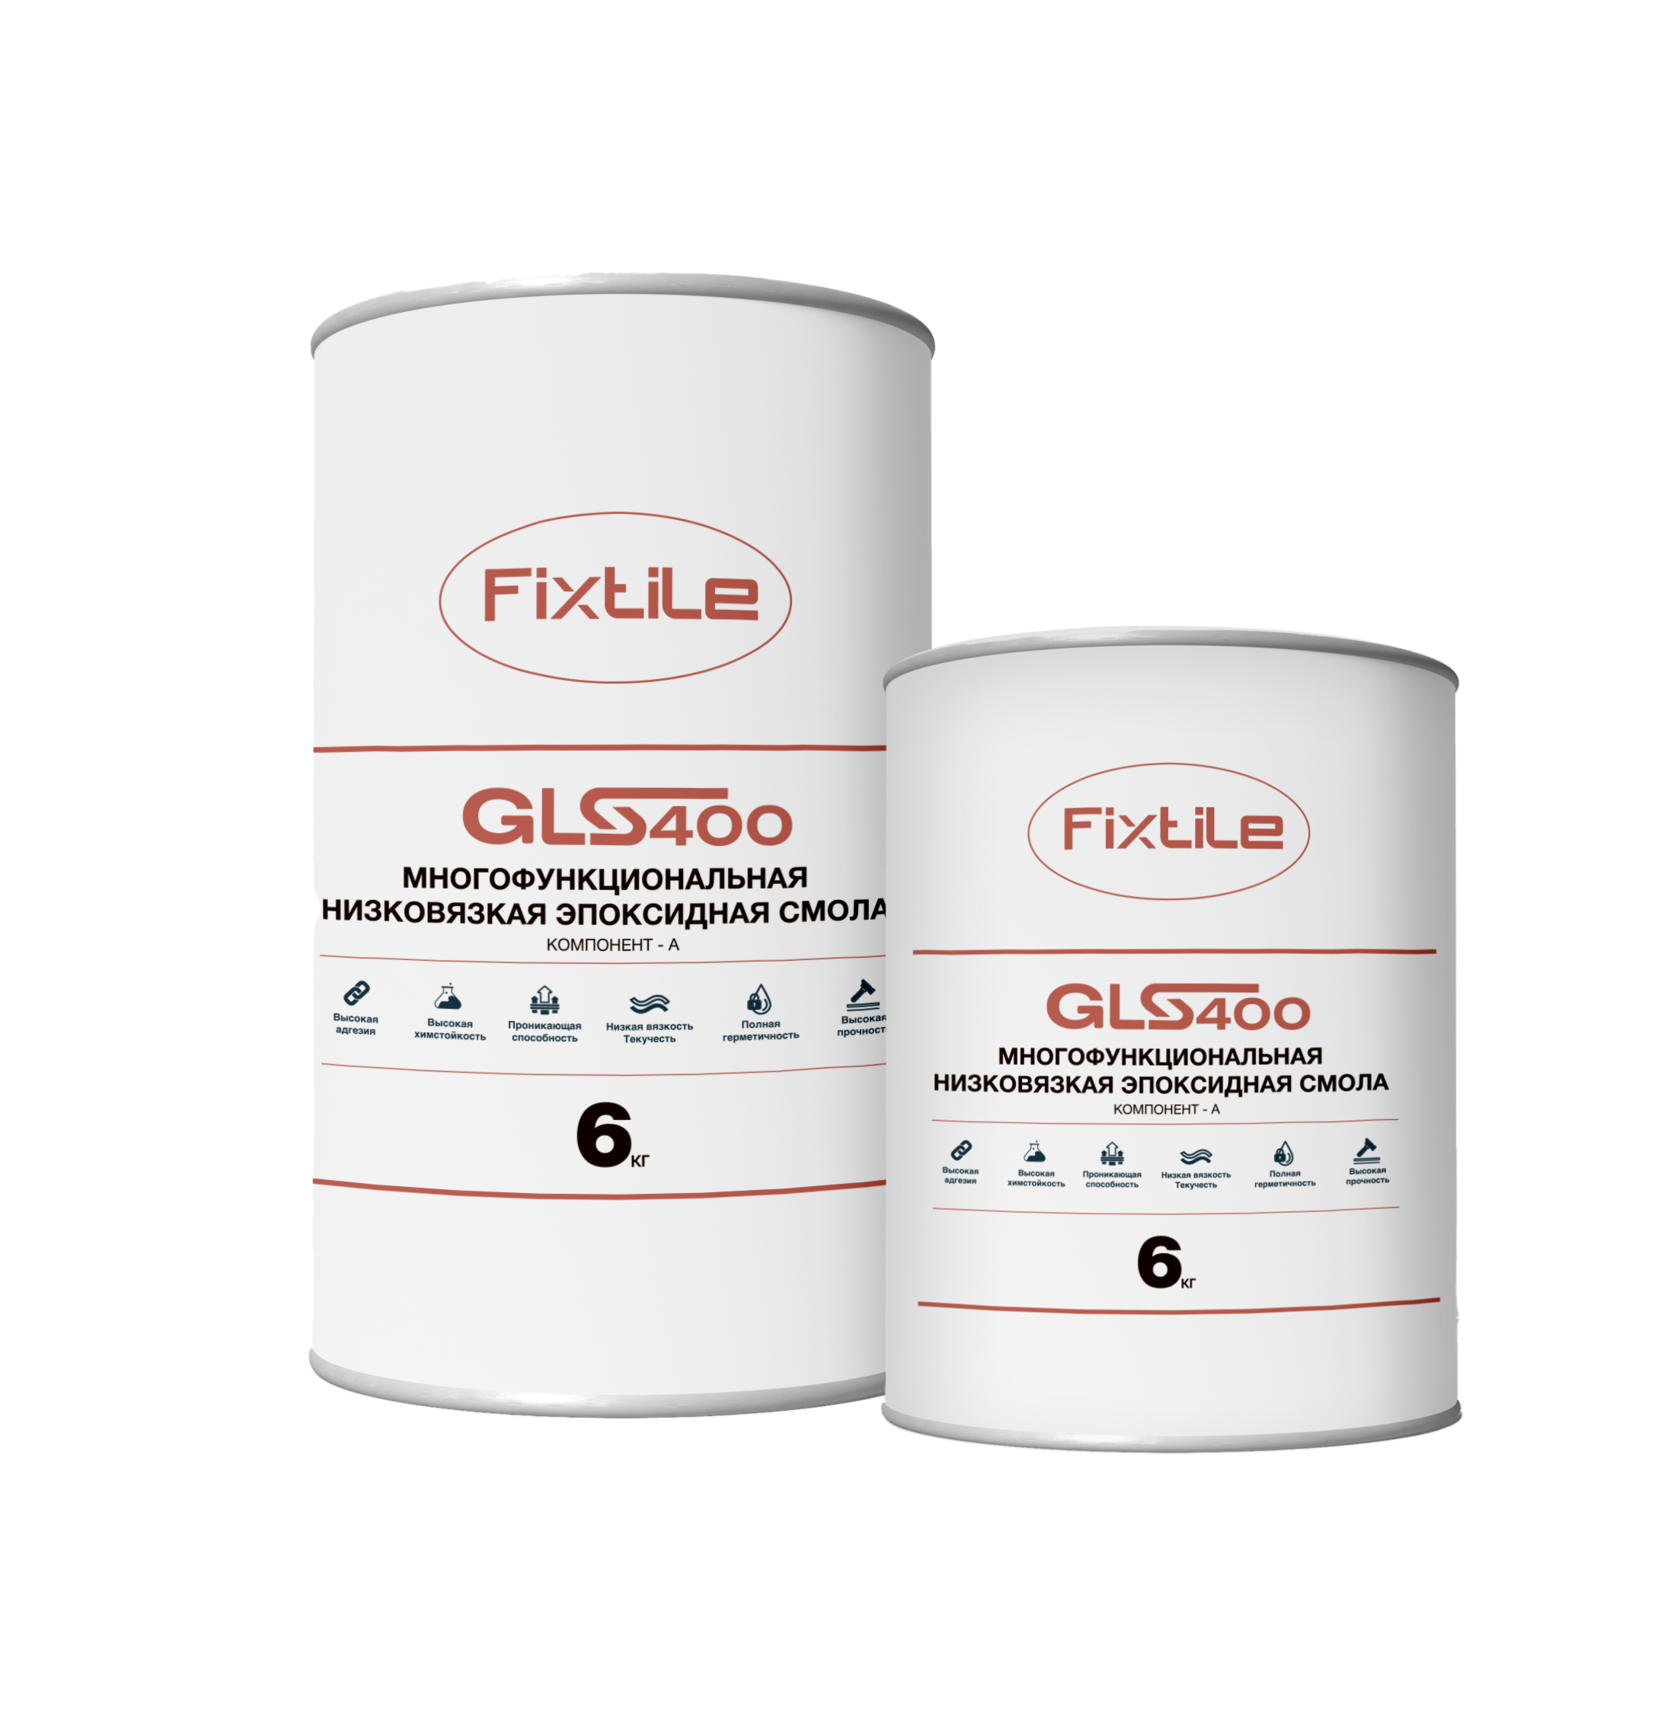 Ремонт и защита бетонных полов  Fixtile GLS400 - строительная эпоксидная смола низкой вязкости повышенной стойкости.